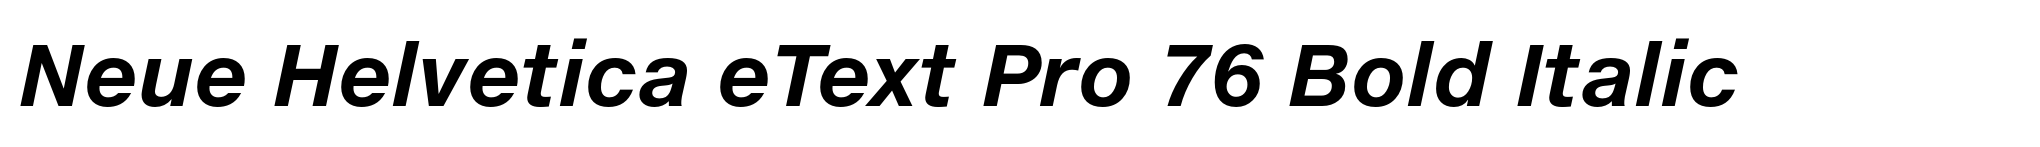 Neue Helvetica eText Pro 76 Bold Italic image